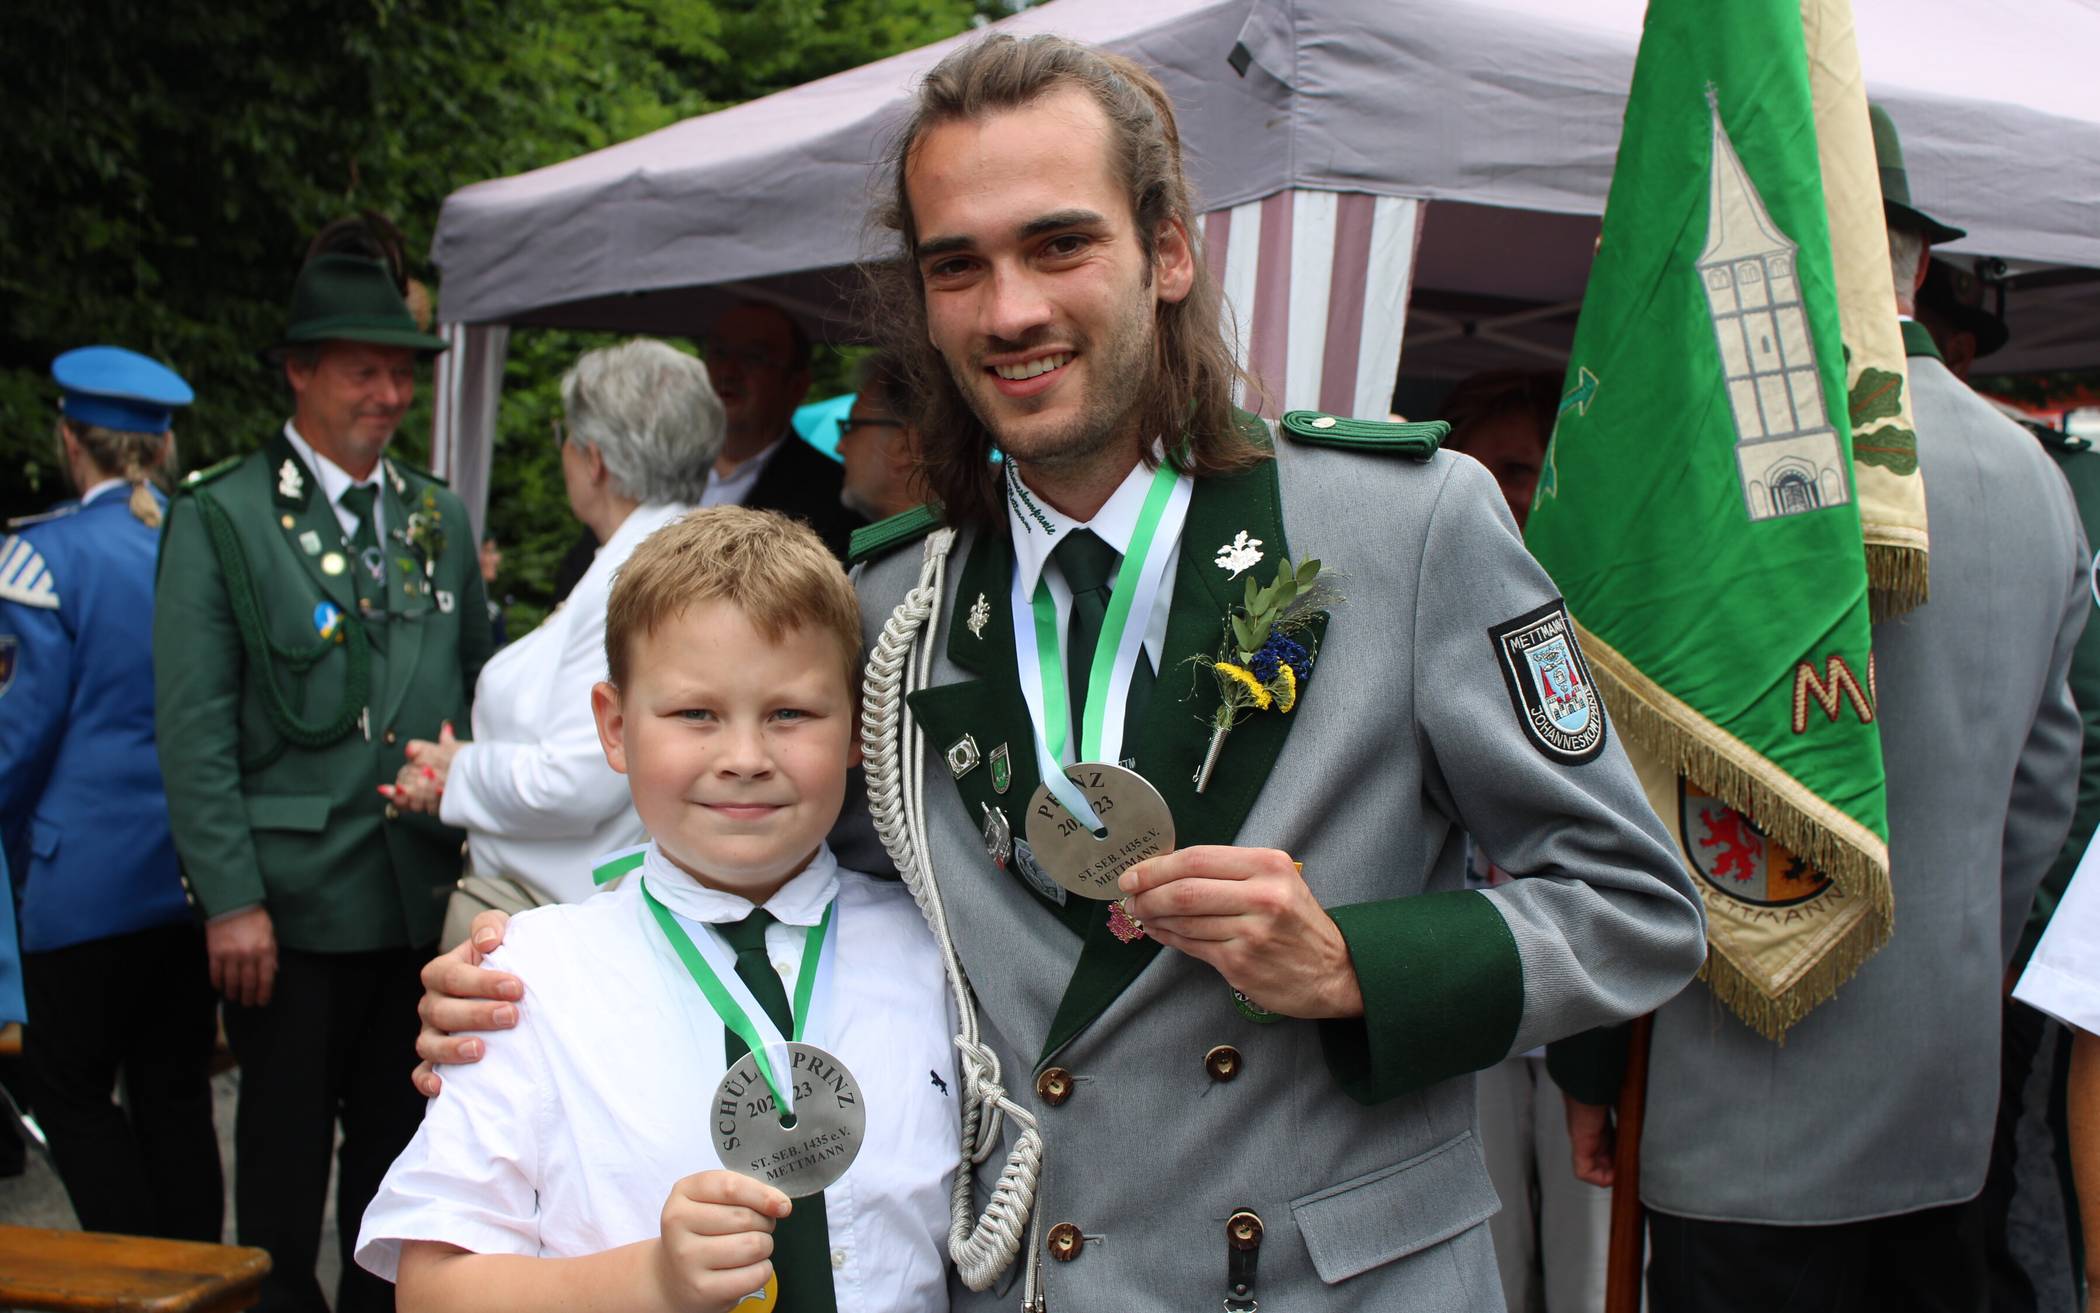  Treffsicher: Schülerprinz Ole Winkelhane (links) und Jungschützenprinz Fabian Stein zeigen kurz nach ihrem Erfolg ihre Schützenplatten.   